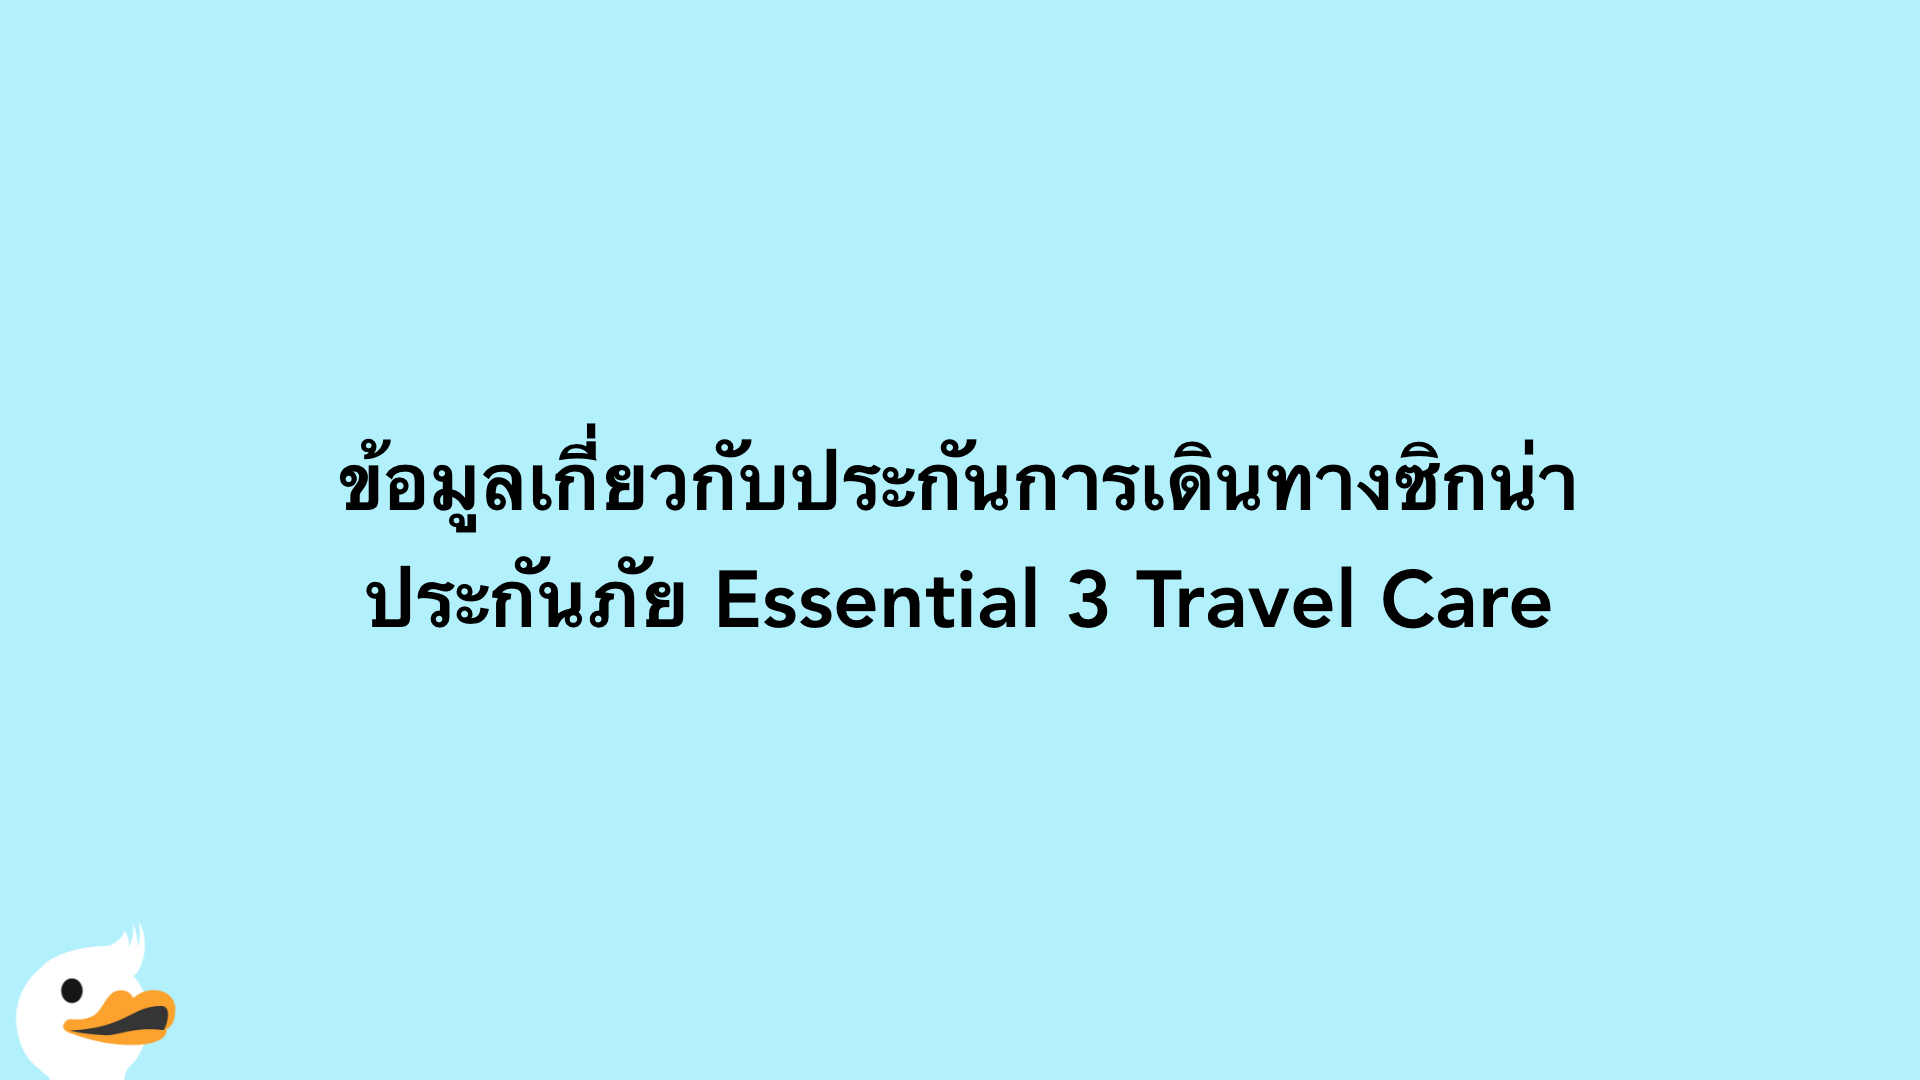 ข้อมูลเกี่ยวกับประกันการเดินทางซิกน่า ประกันภัย Essential 3 Travel Care